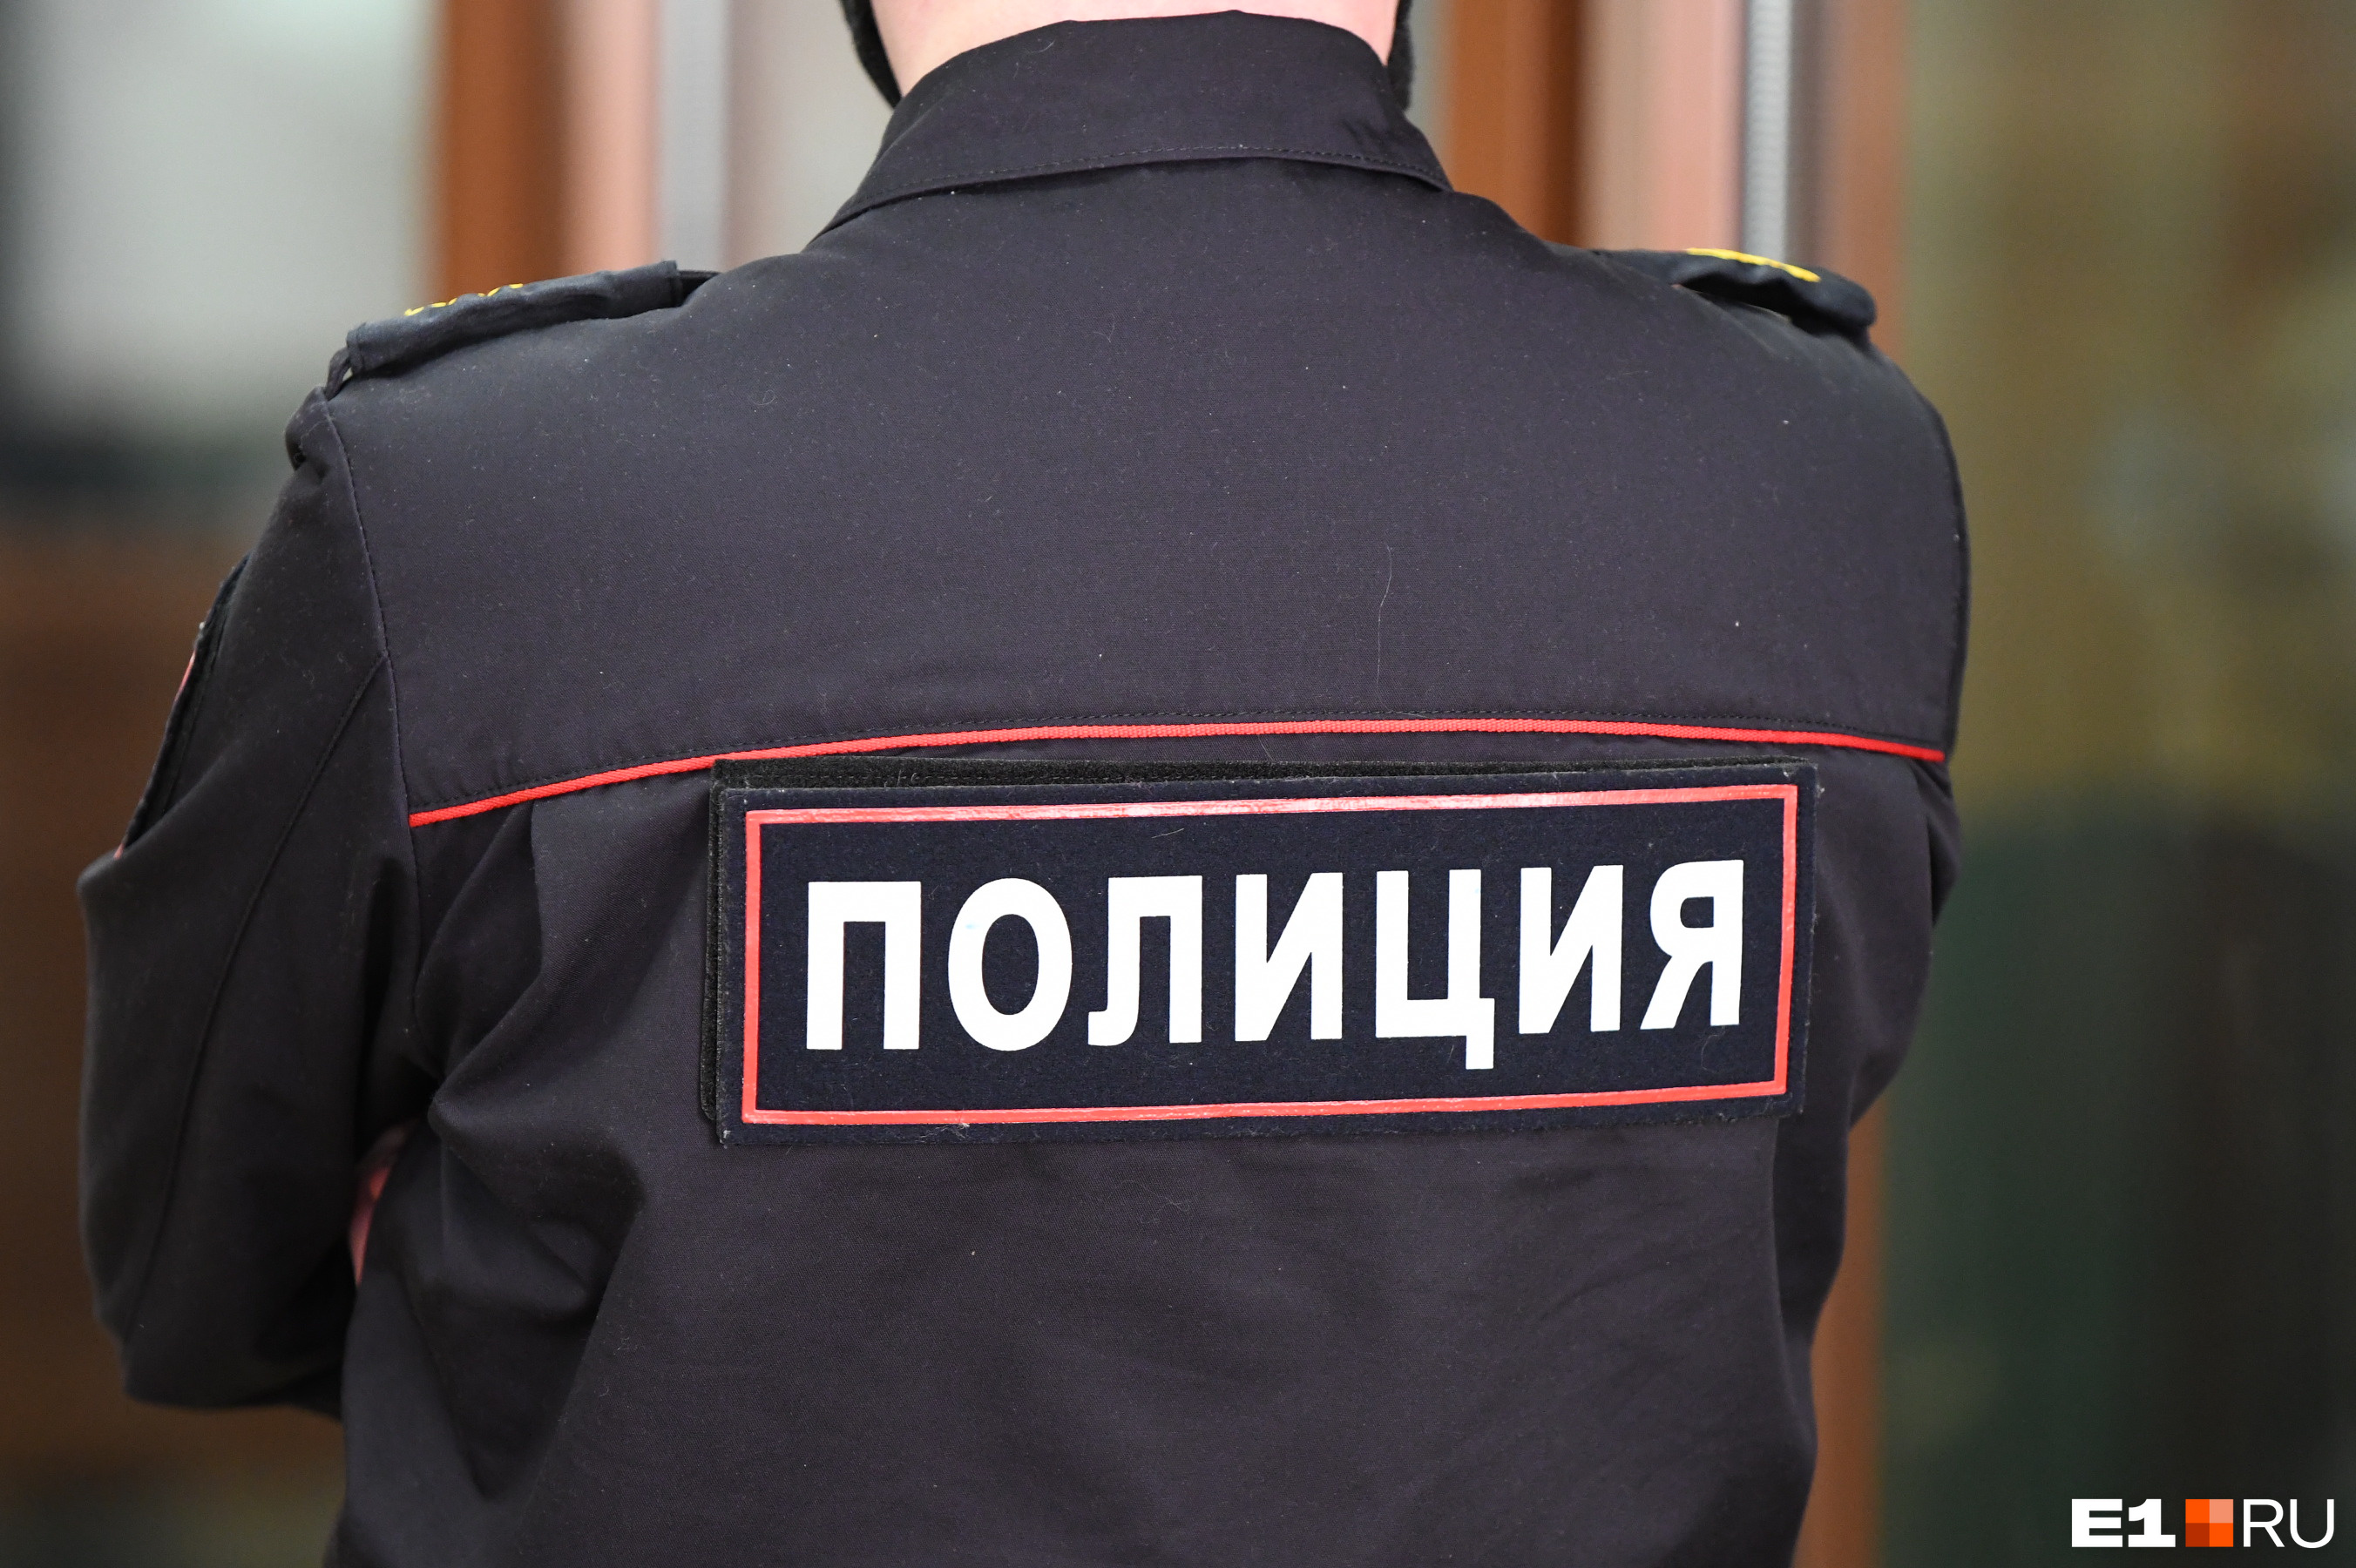 В Ижевске мужчина выбросил из окна 17-летнюю девушку и погиб сам: новости 15 июля